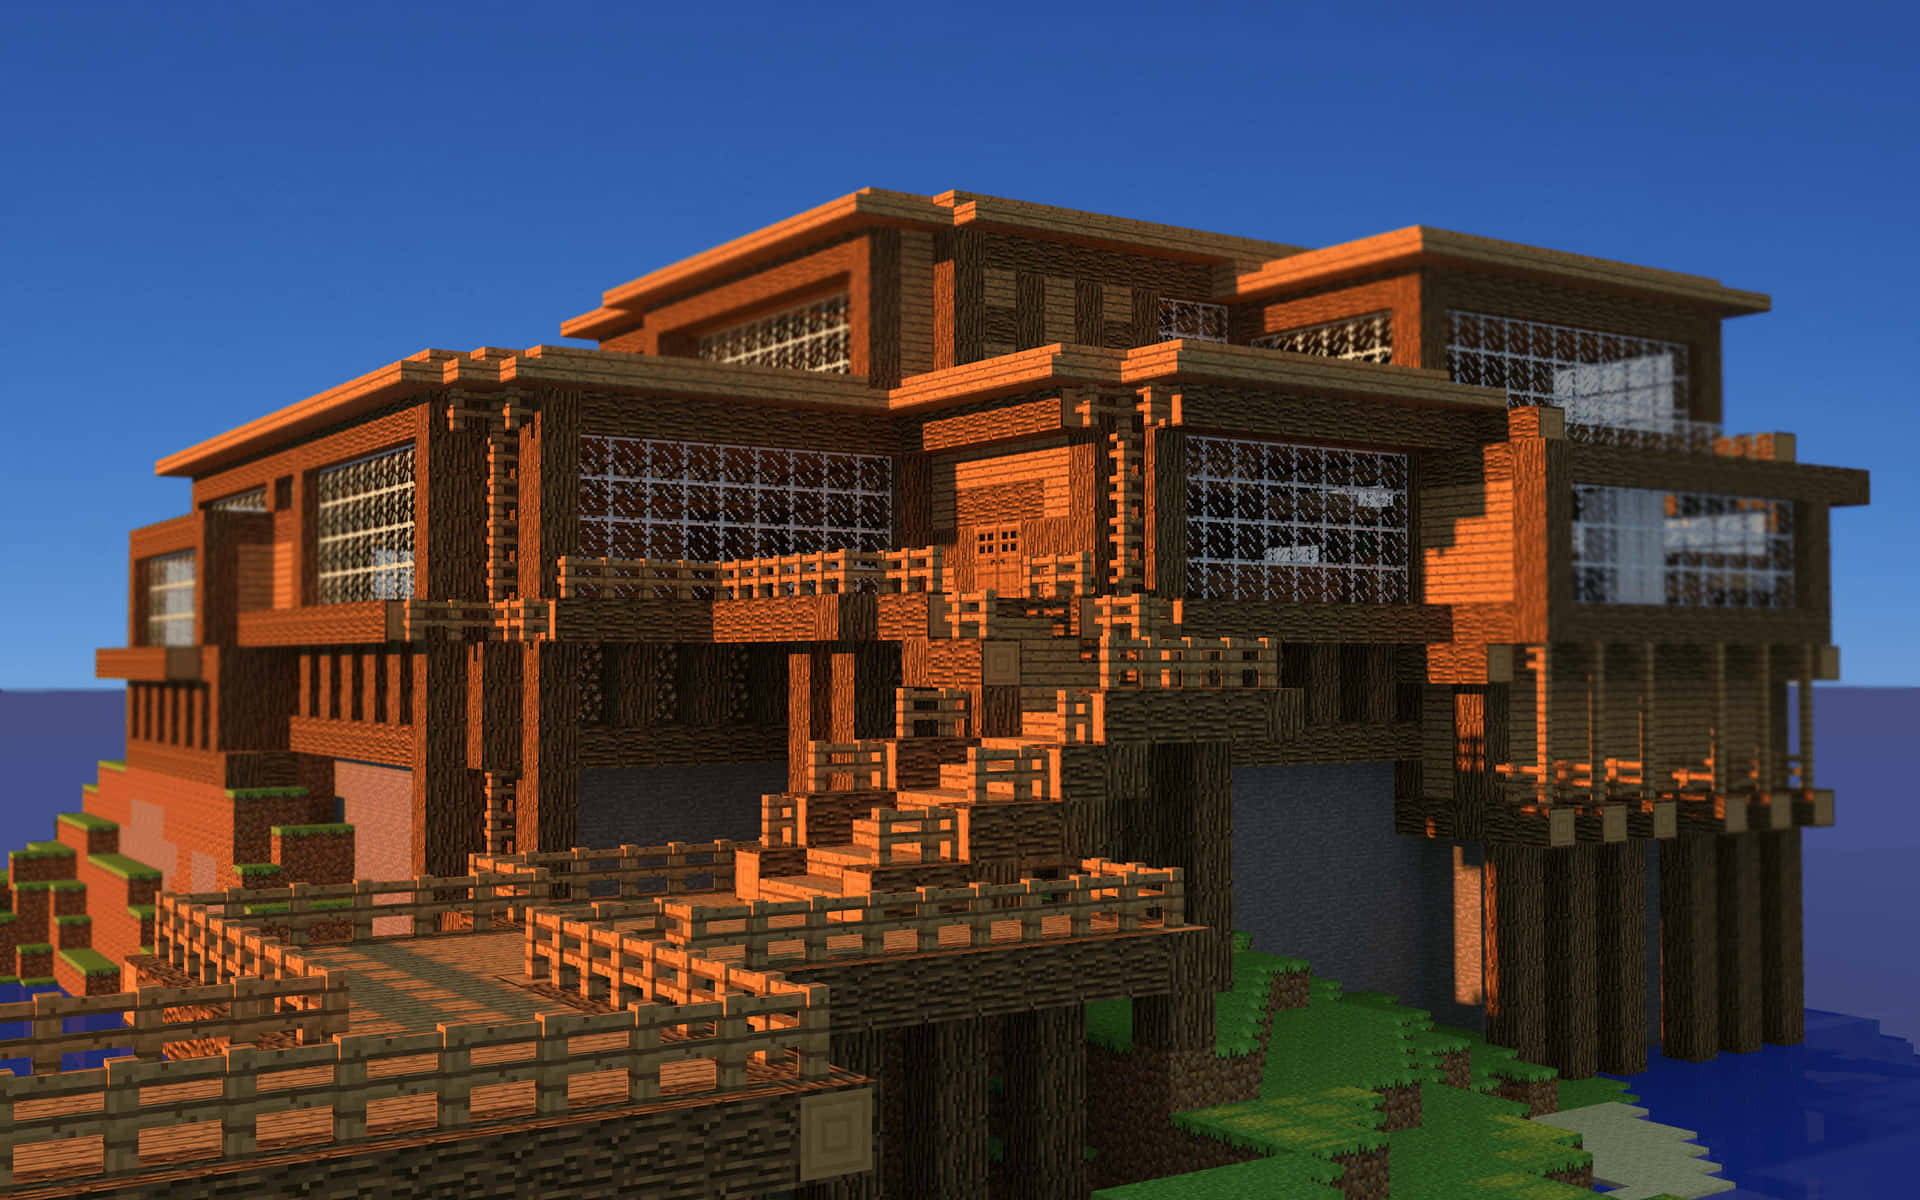 Luftansichtbeeindruckender Minecraft-häuser In Einer Traumhaften Landschaft.